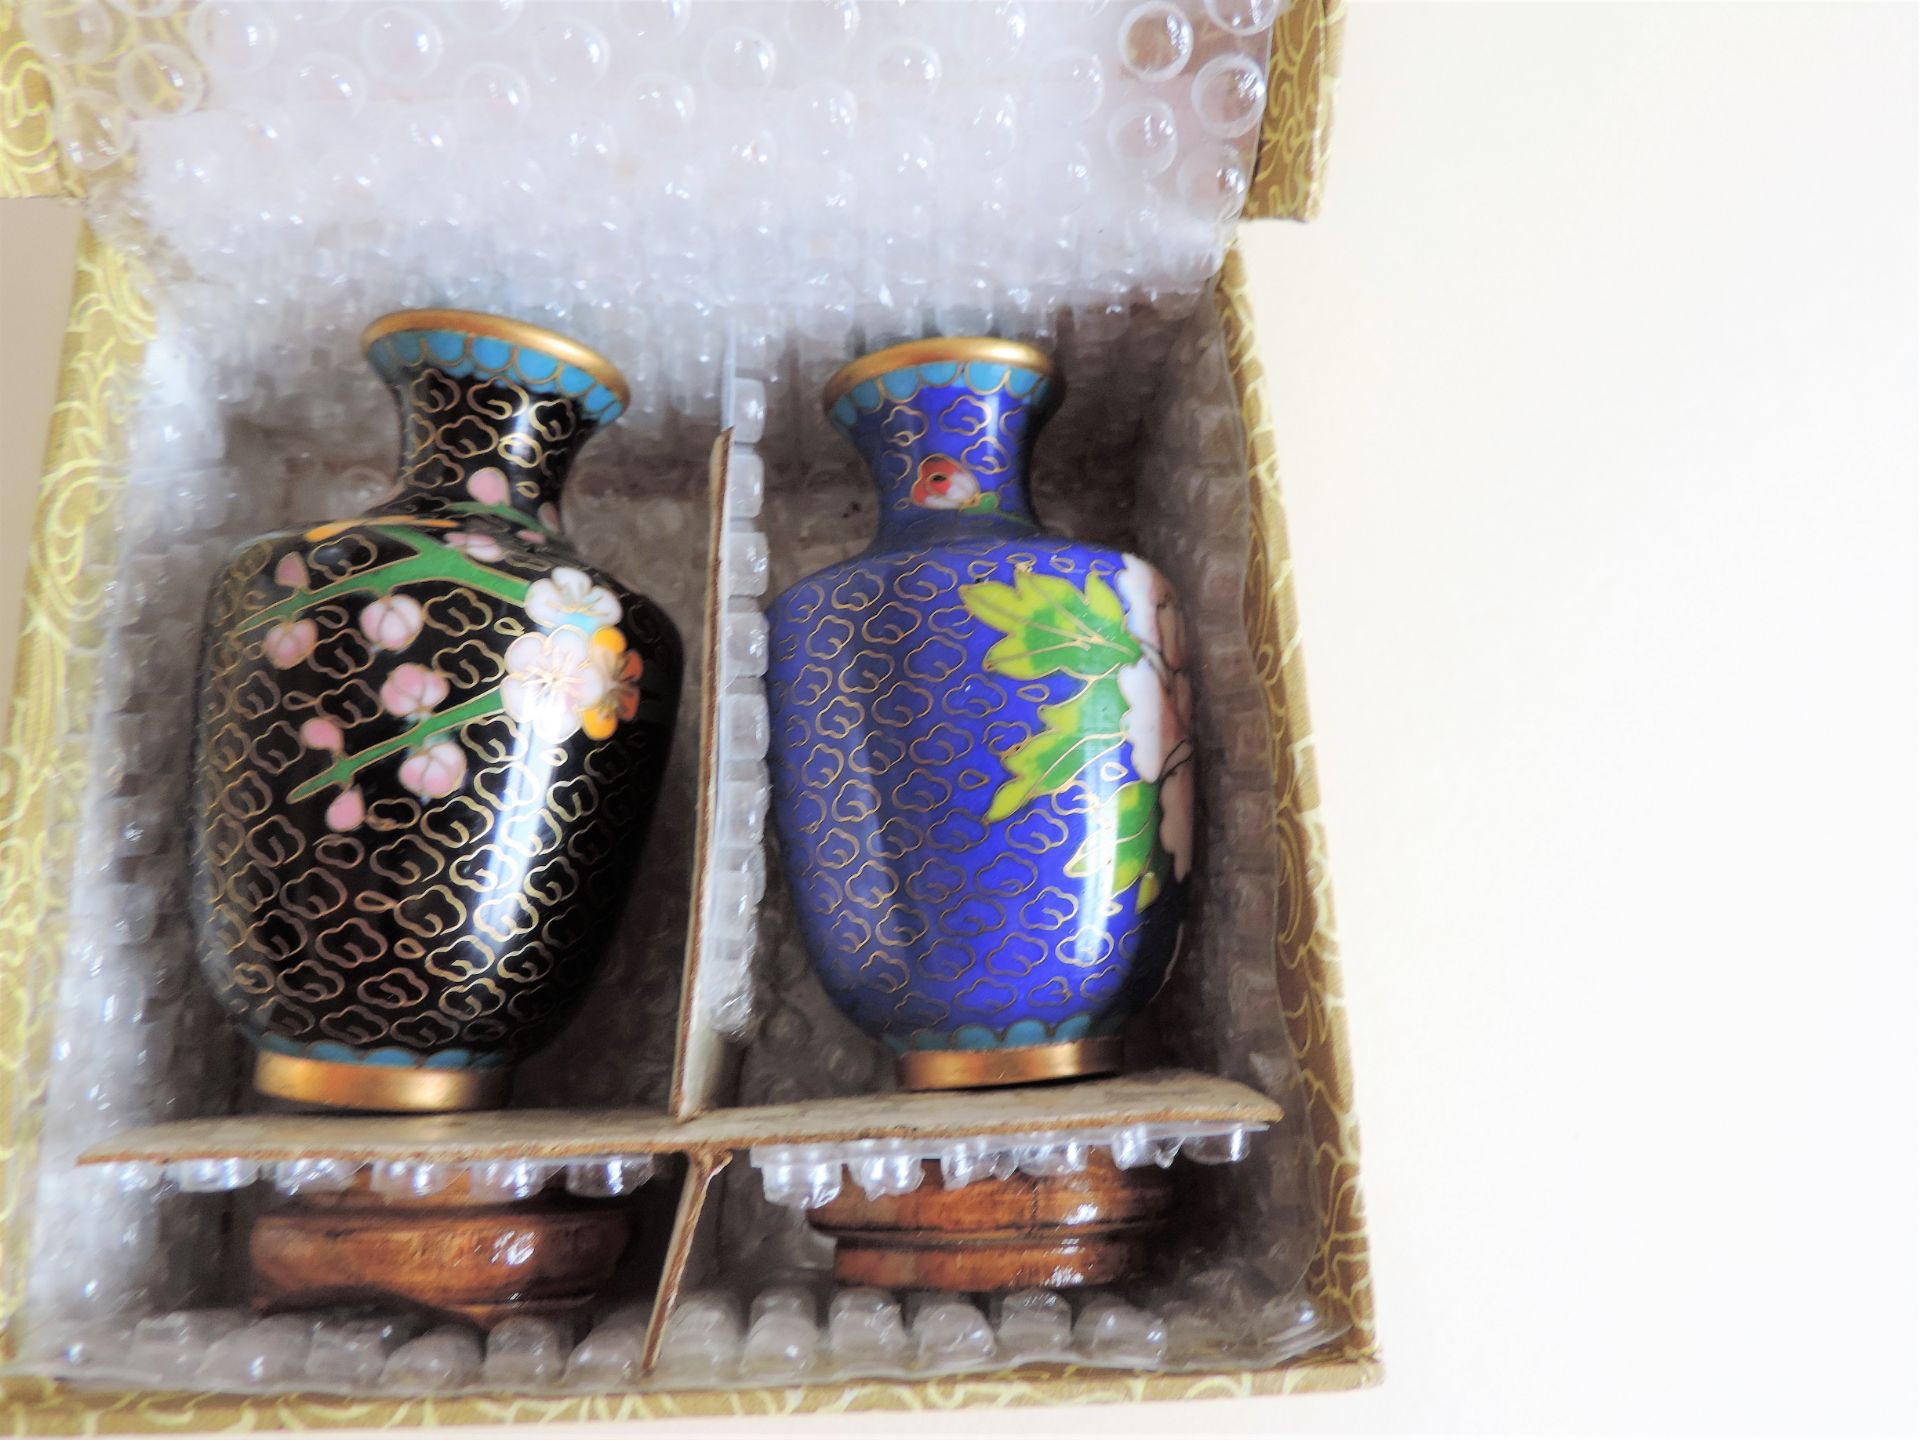 Pair of Vintage Cloisonne Vases - Image 5 of 5